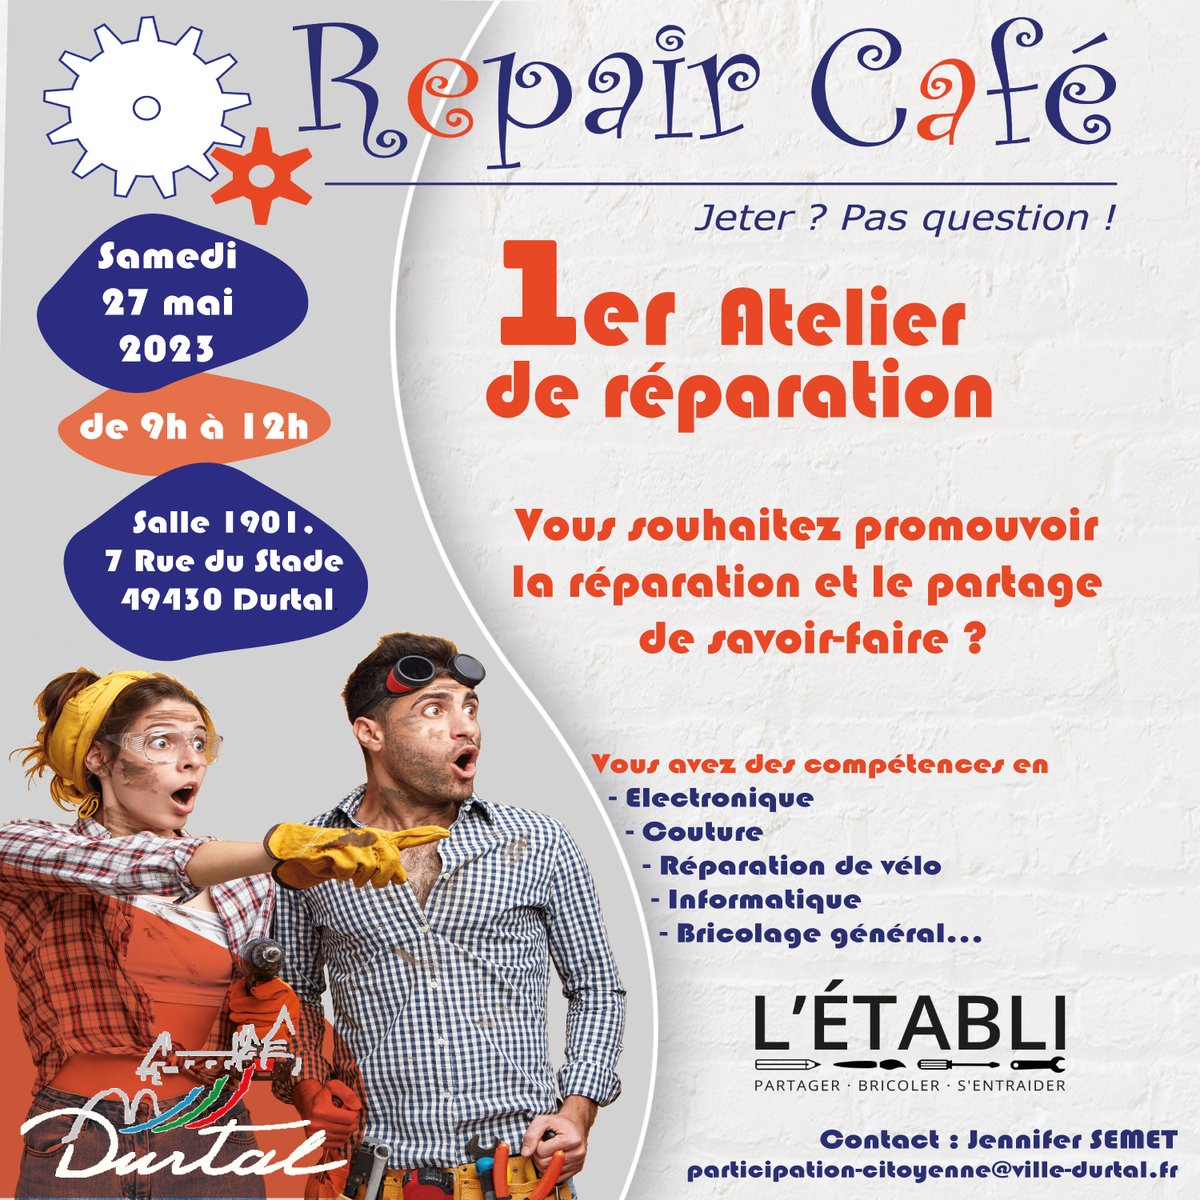 #Durtal lance son demain samedi 27 mai 2023 son premier #atelier de #réparation 'Repair café' avec le soutien de l'#Etabli.
Des #outils de réparation seront mis à disposition ainsi que des #bénévoles #réparateurs disponibles !
#repaircafe #solidarite #entraide #partage #collectif